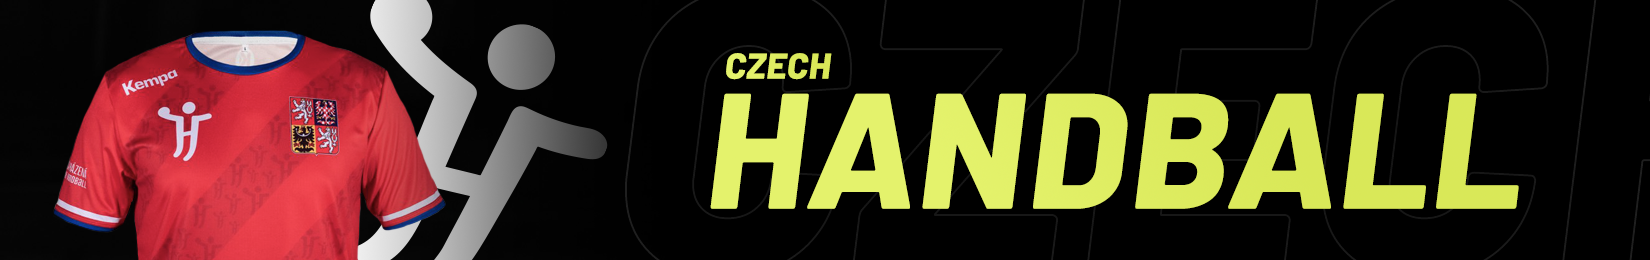 Czechhandball desktop